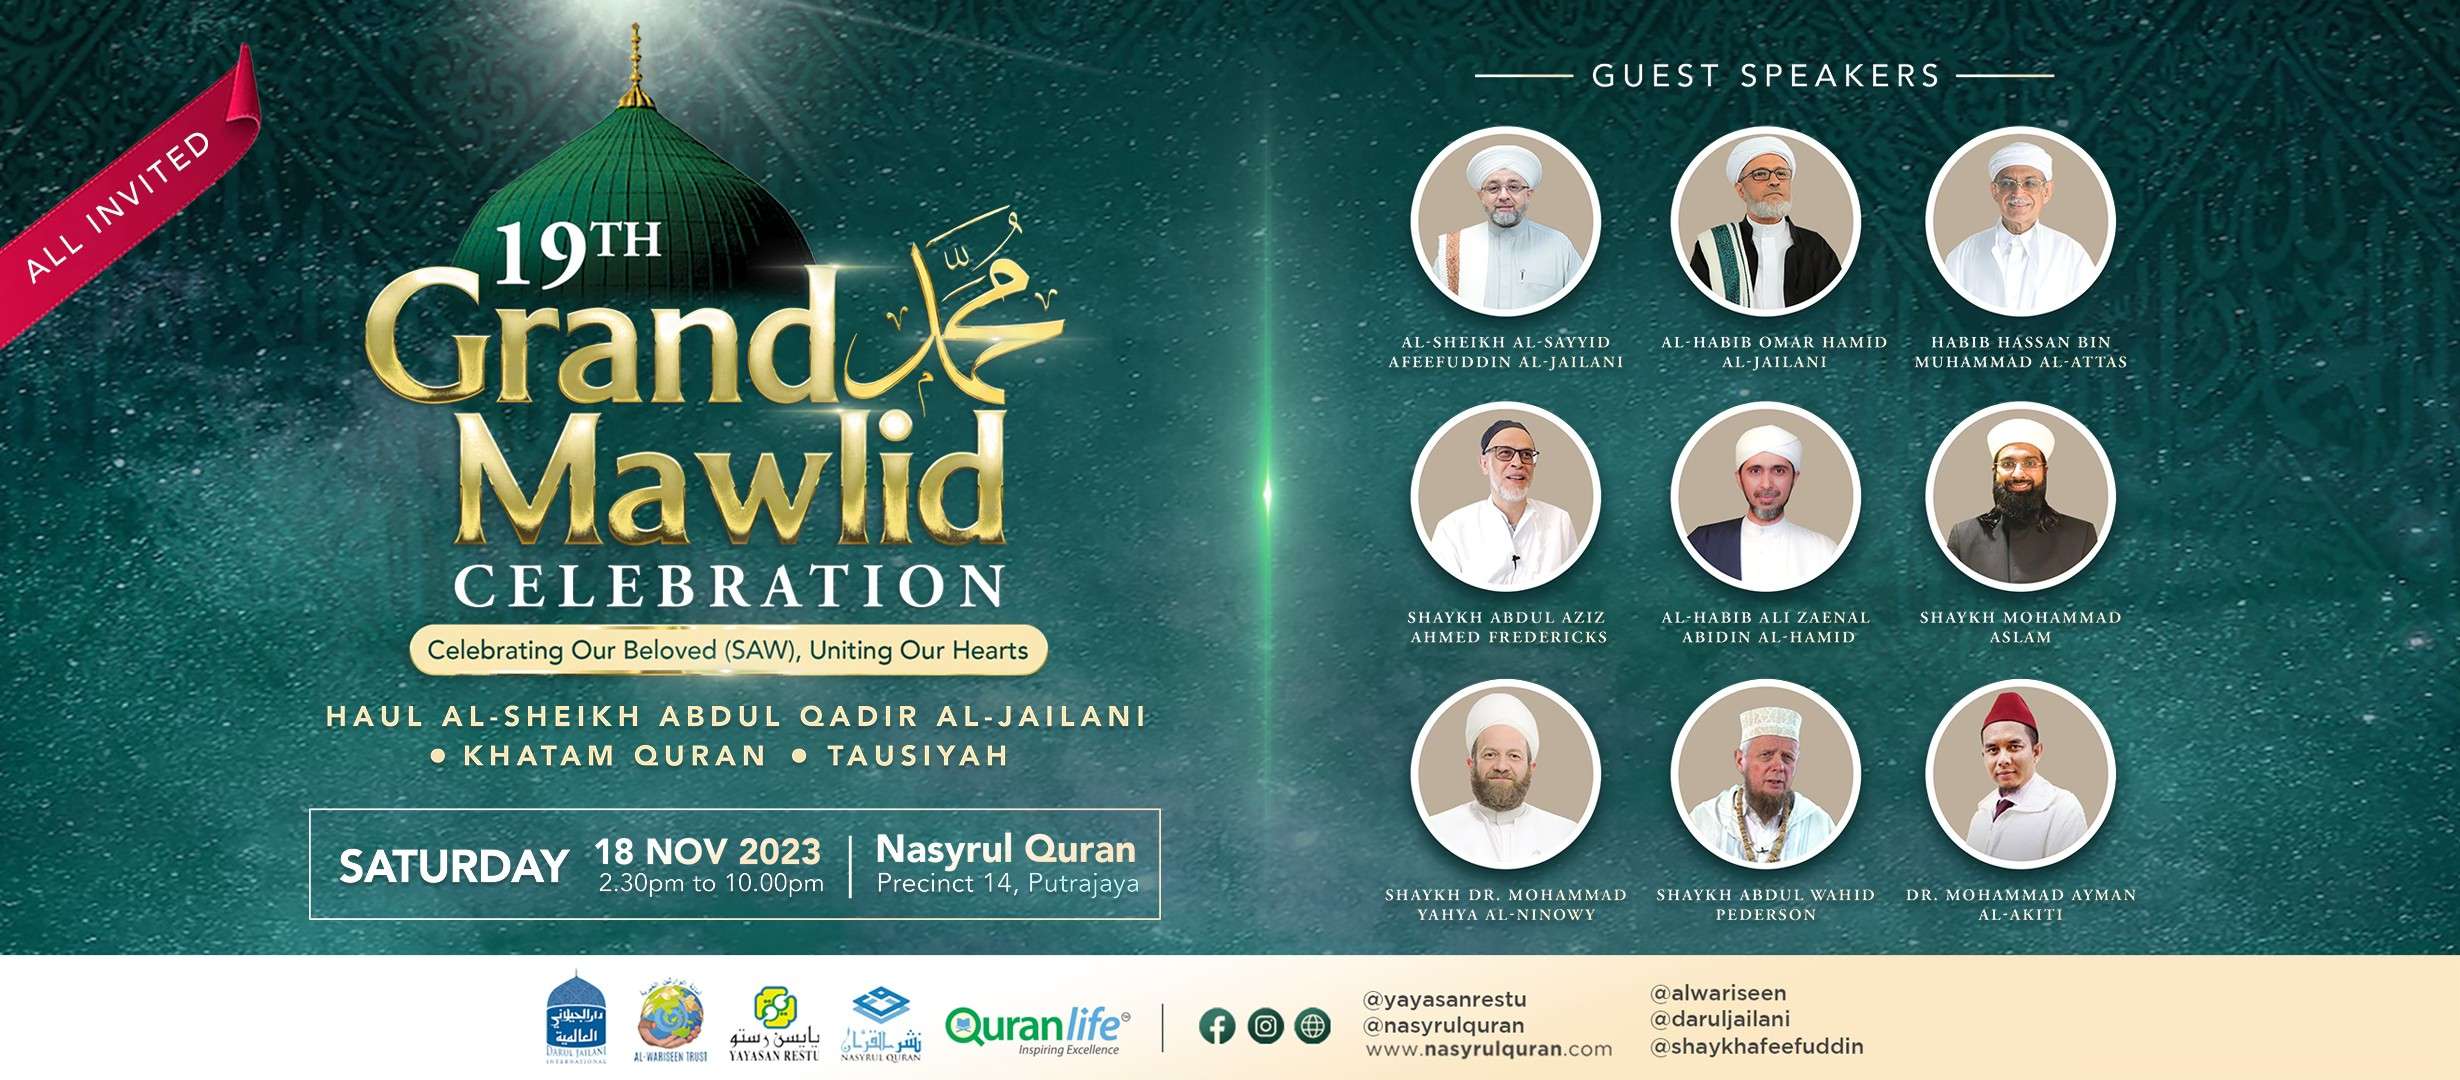 19th Grand Mawlid – Malaysia | 18 Nov 2023 | Annual